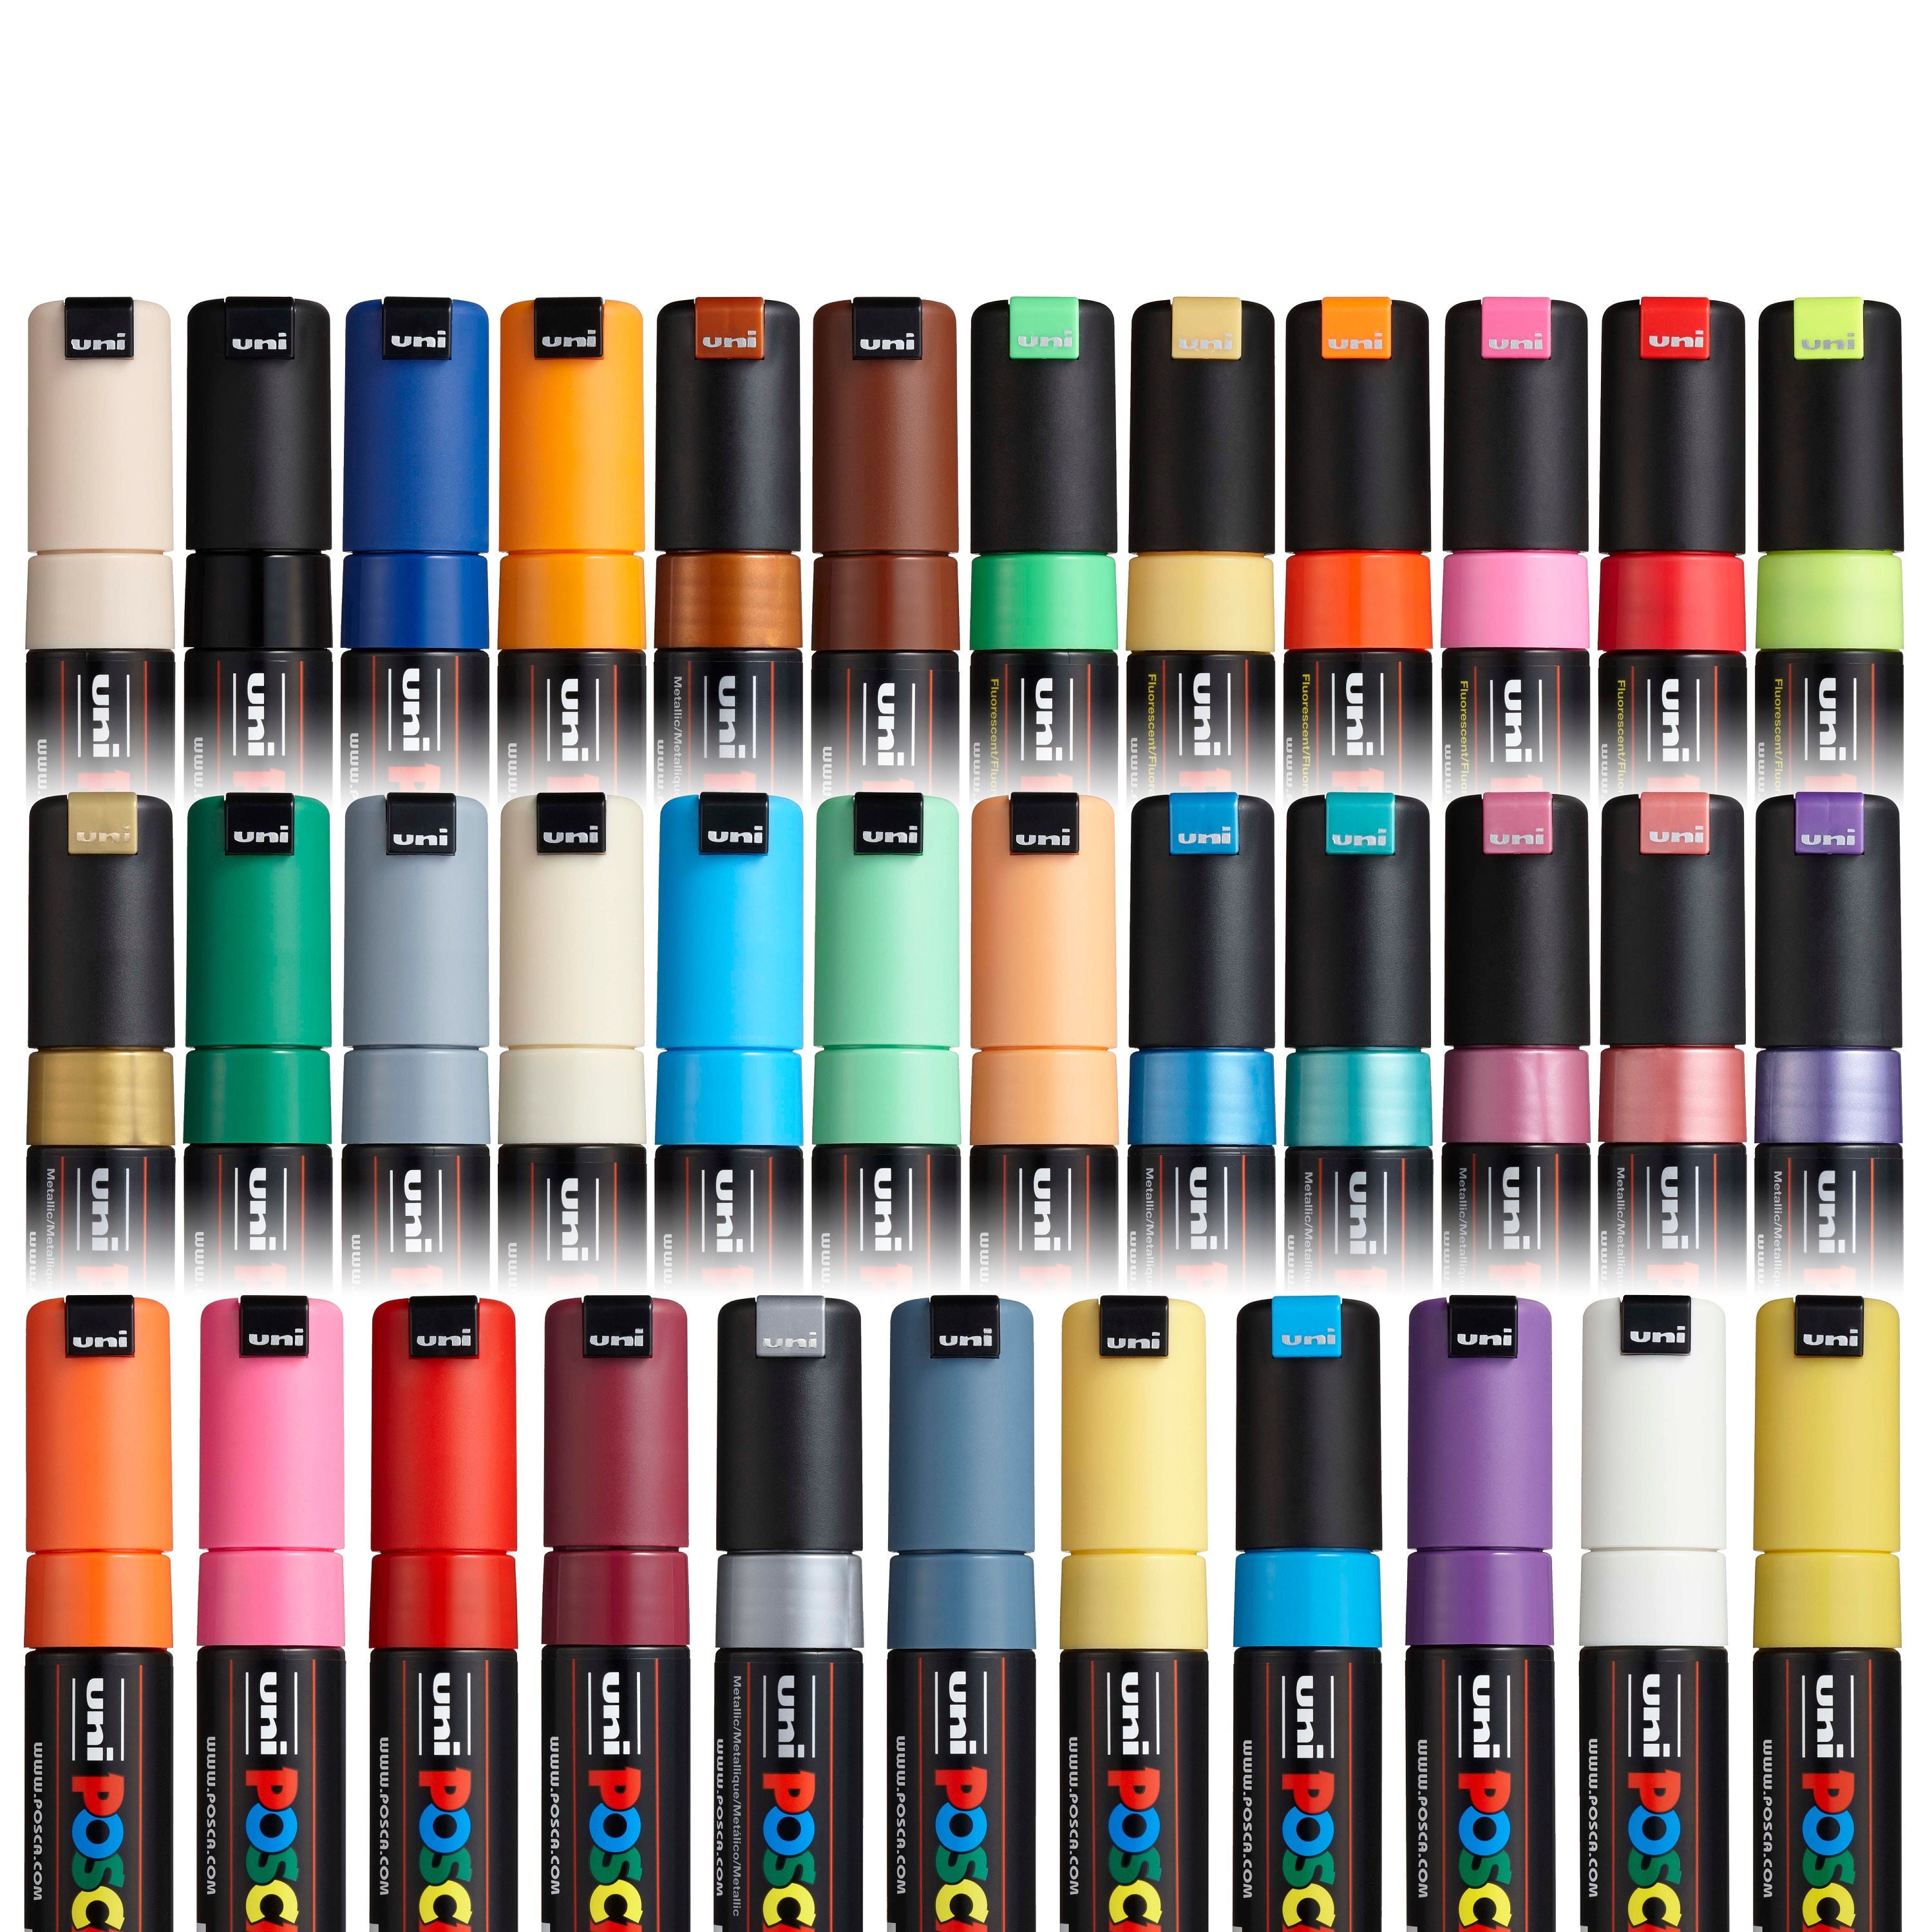 Uni Posca Markers marcadores PC-8K Paint Set, 8/15/28 Colors POP Poster  Acrylic Permanent Graffiti Paint Pen For Metal Ceramic - AliExpress